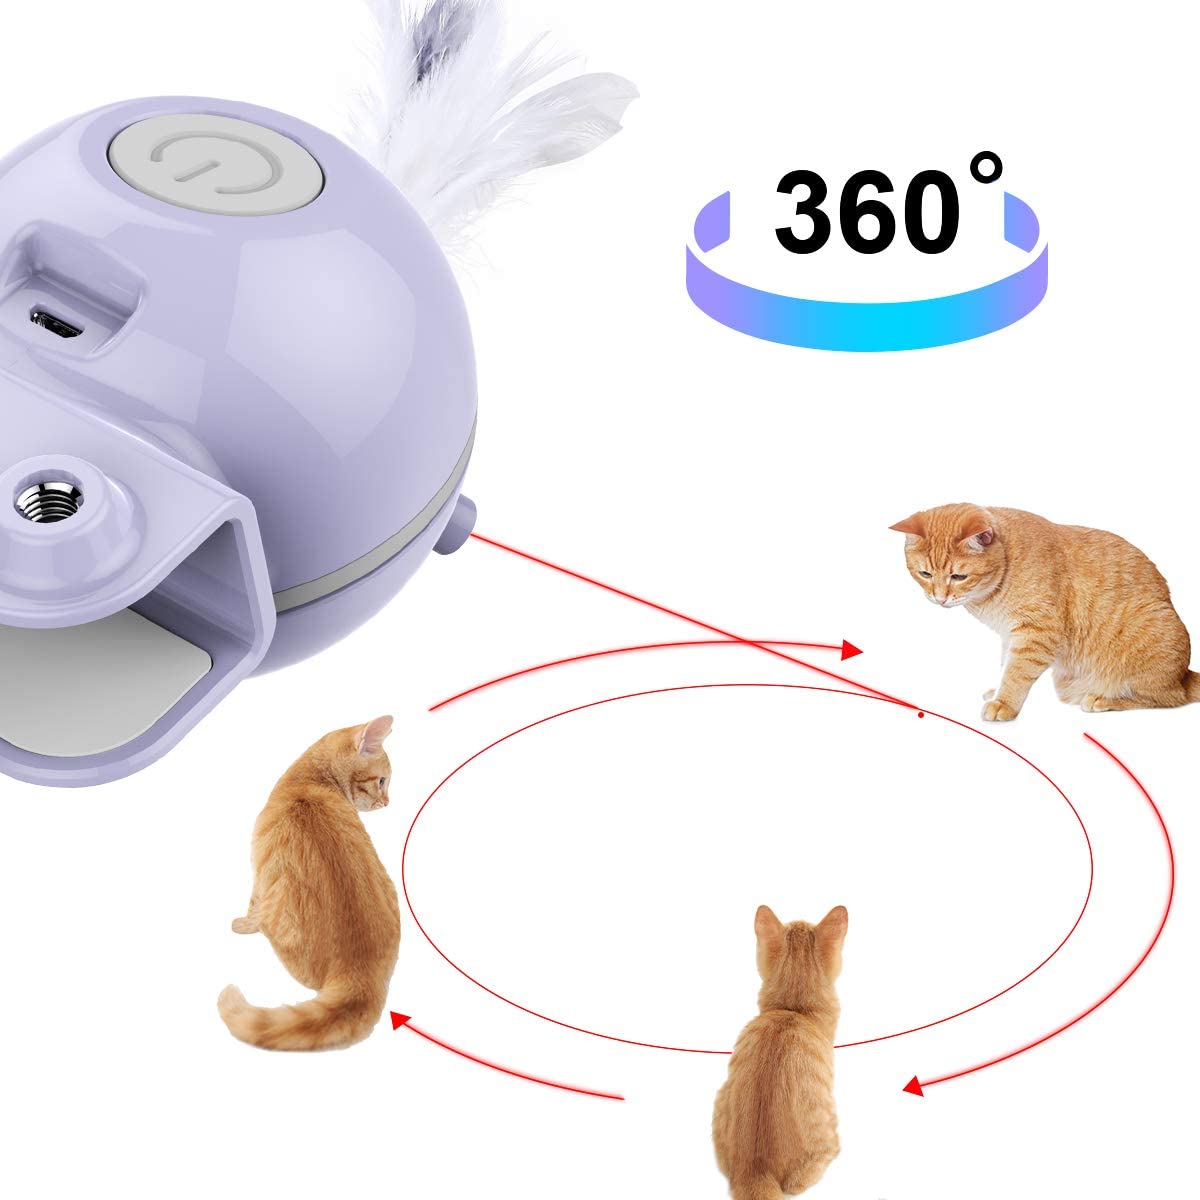  DADYPET Juguetes para Gatos interactivos,Electrónico Juguete Gato, 2 en 1 Giratorio de 360 ​​Grados con Bola y Plumas Juguetes Gatos,USB Recargable 